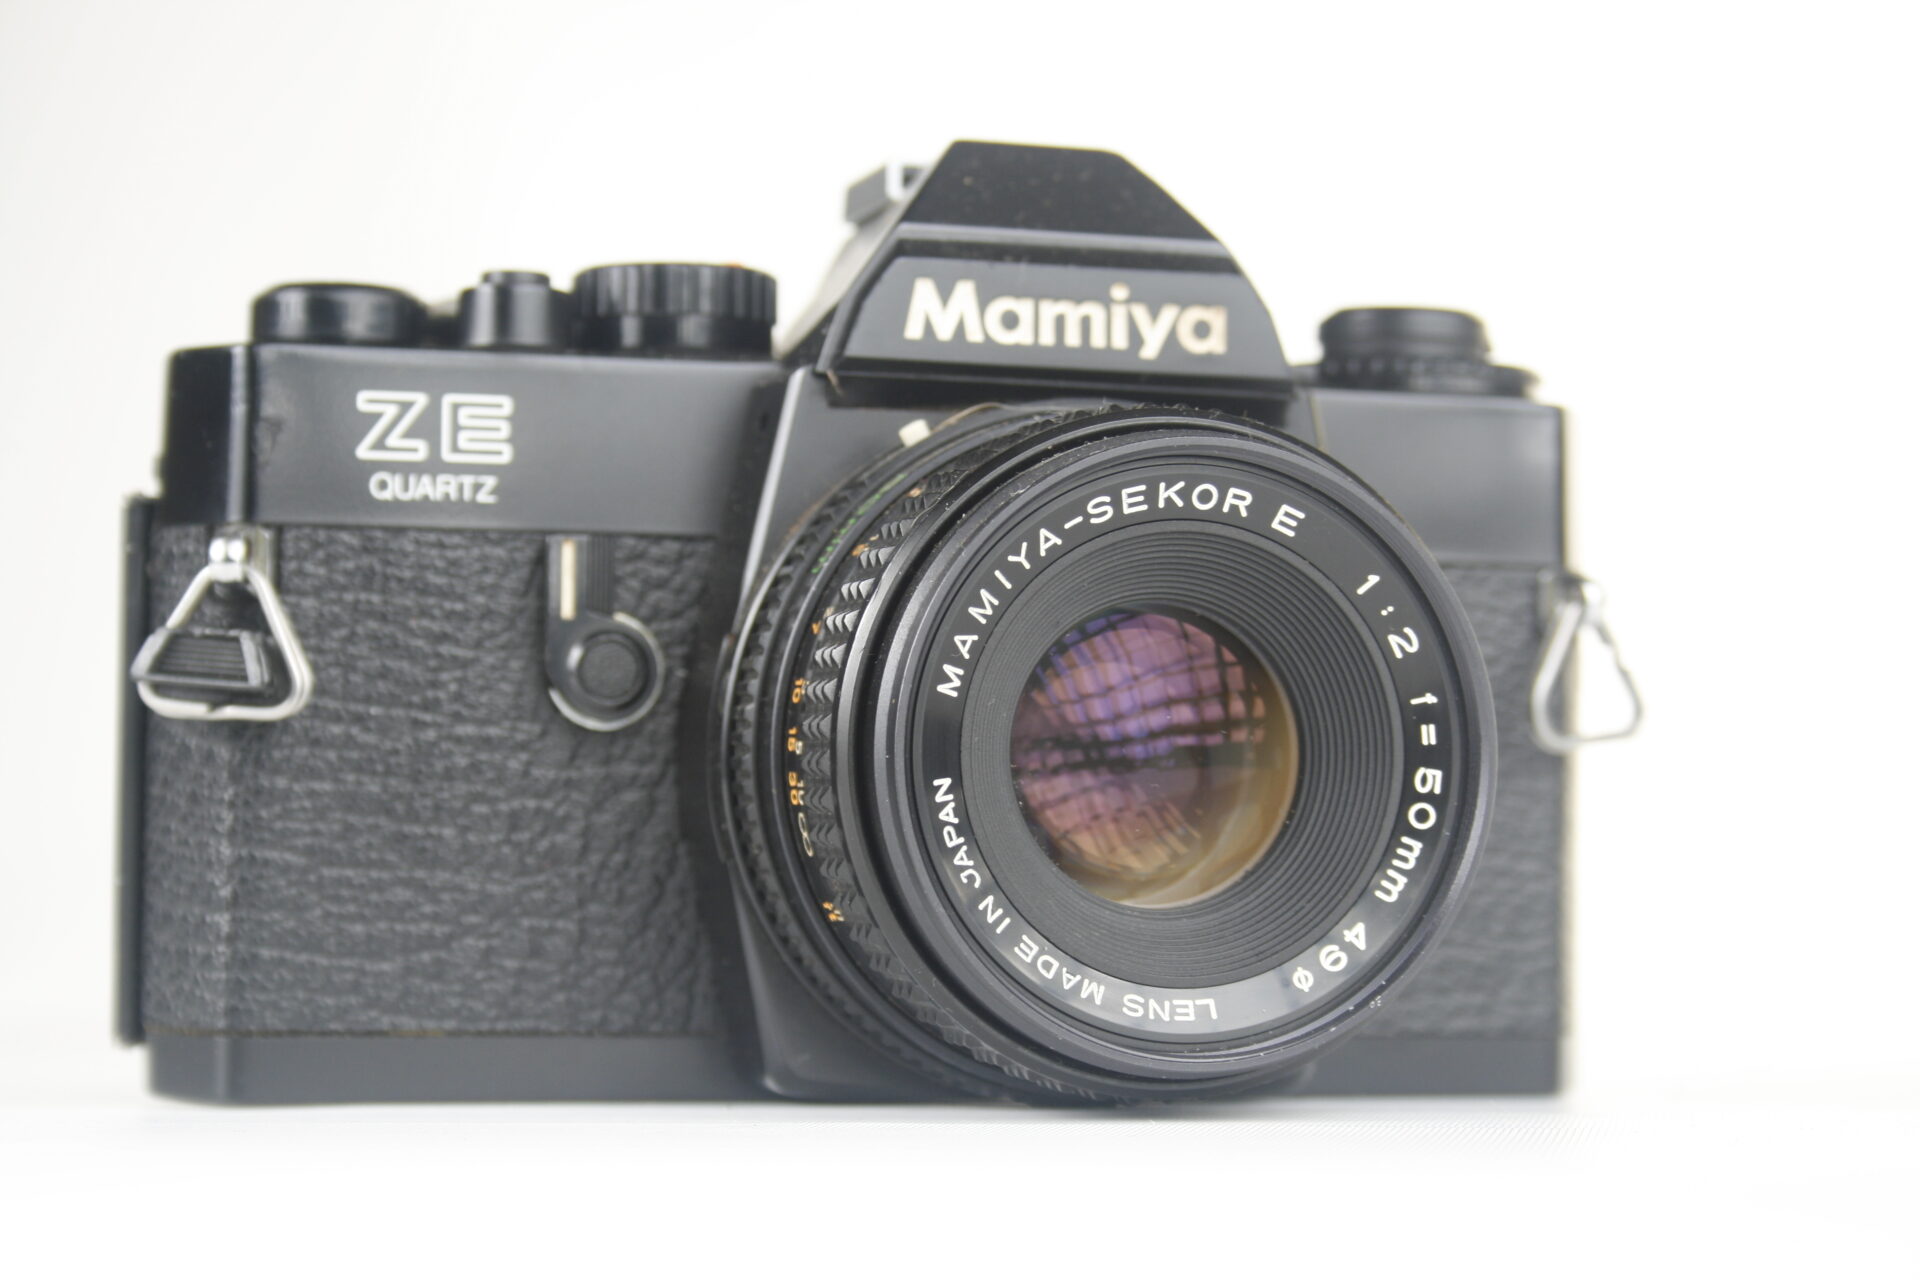 Mamiya ZE Quartz. 35mm SLR camera. 1980. Japan.